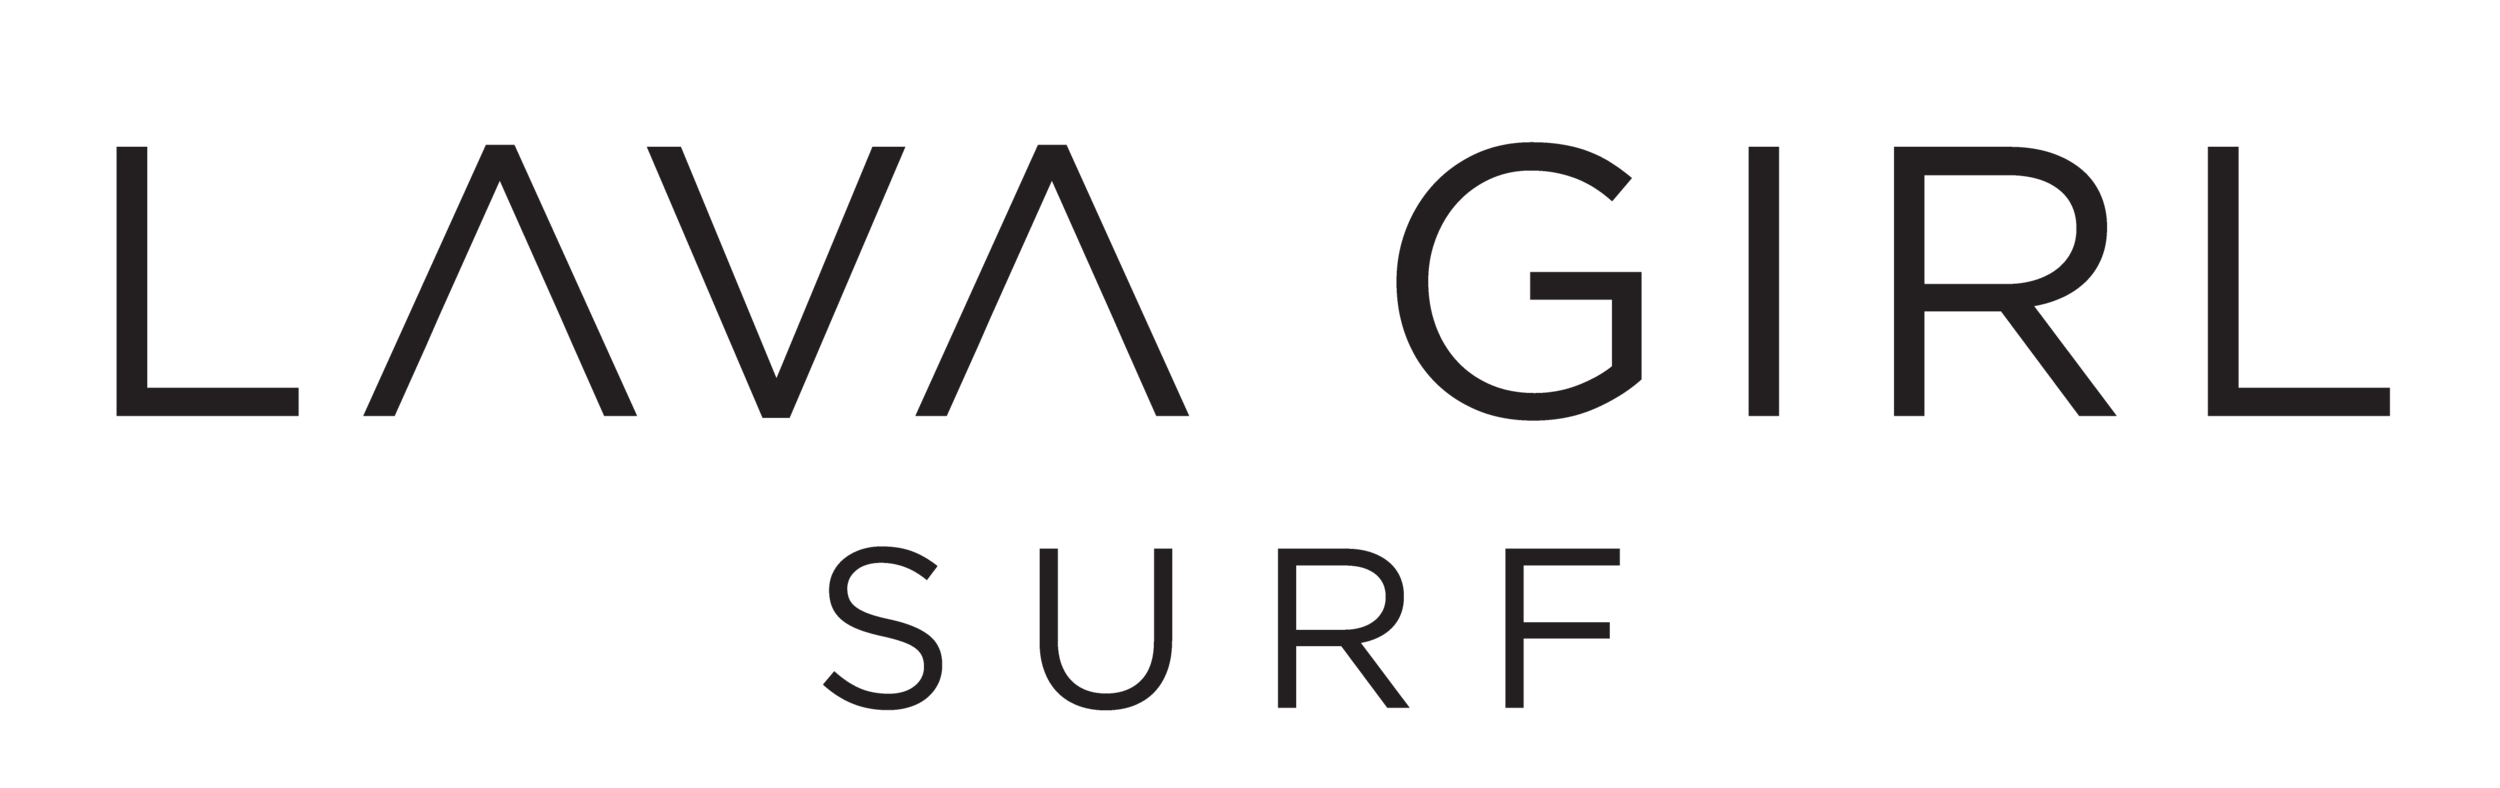 Lava Girl Surf